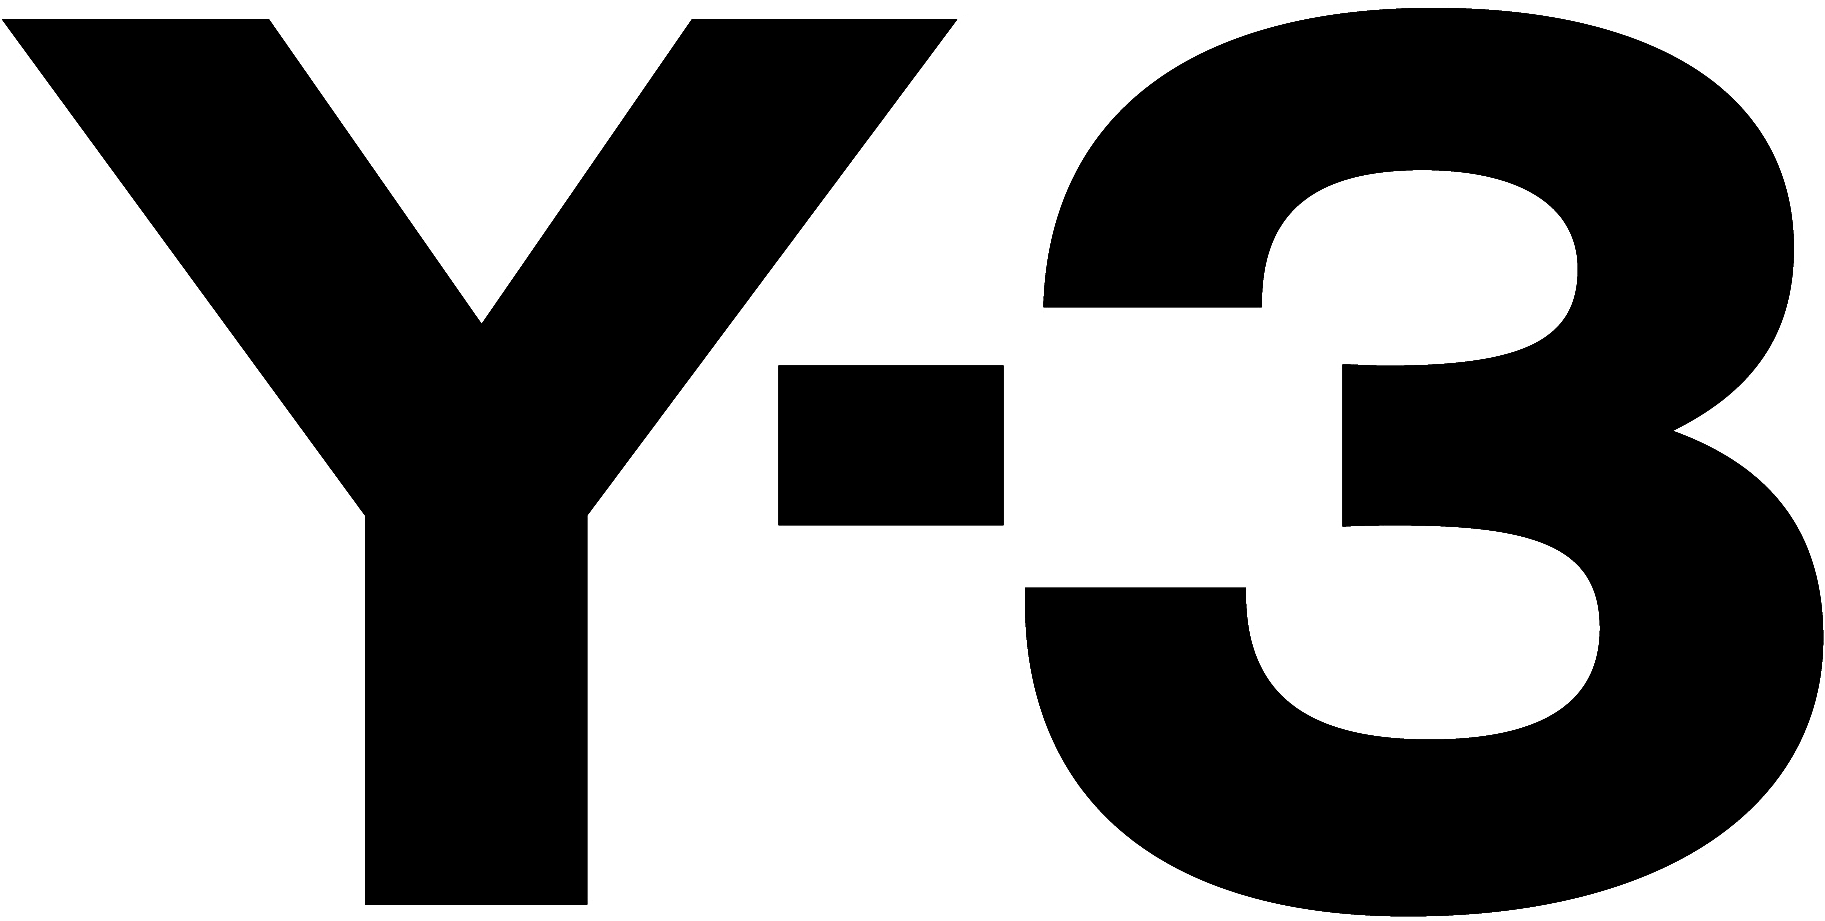 Adidas Yohji Yamamoto Y3 Logo - Adidas Y 3 Logo (2272x1704)